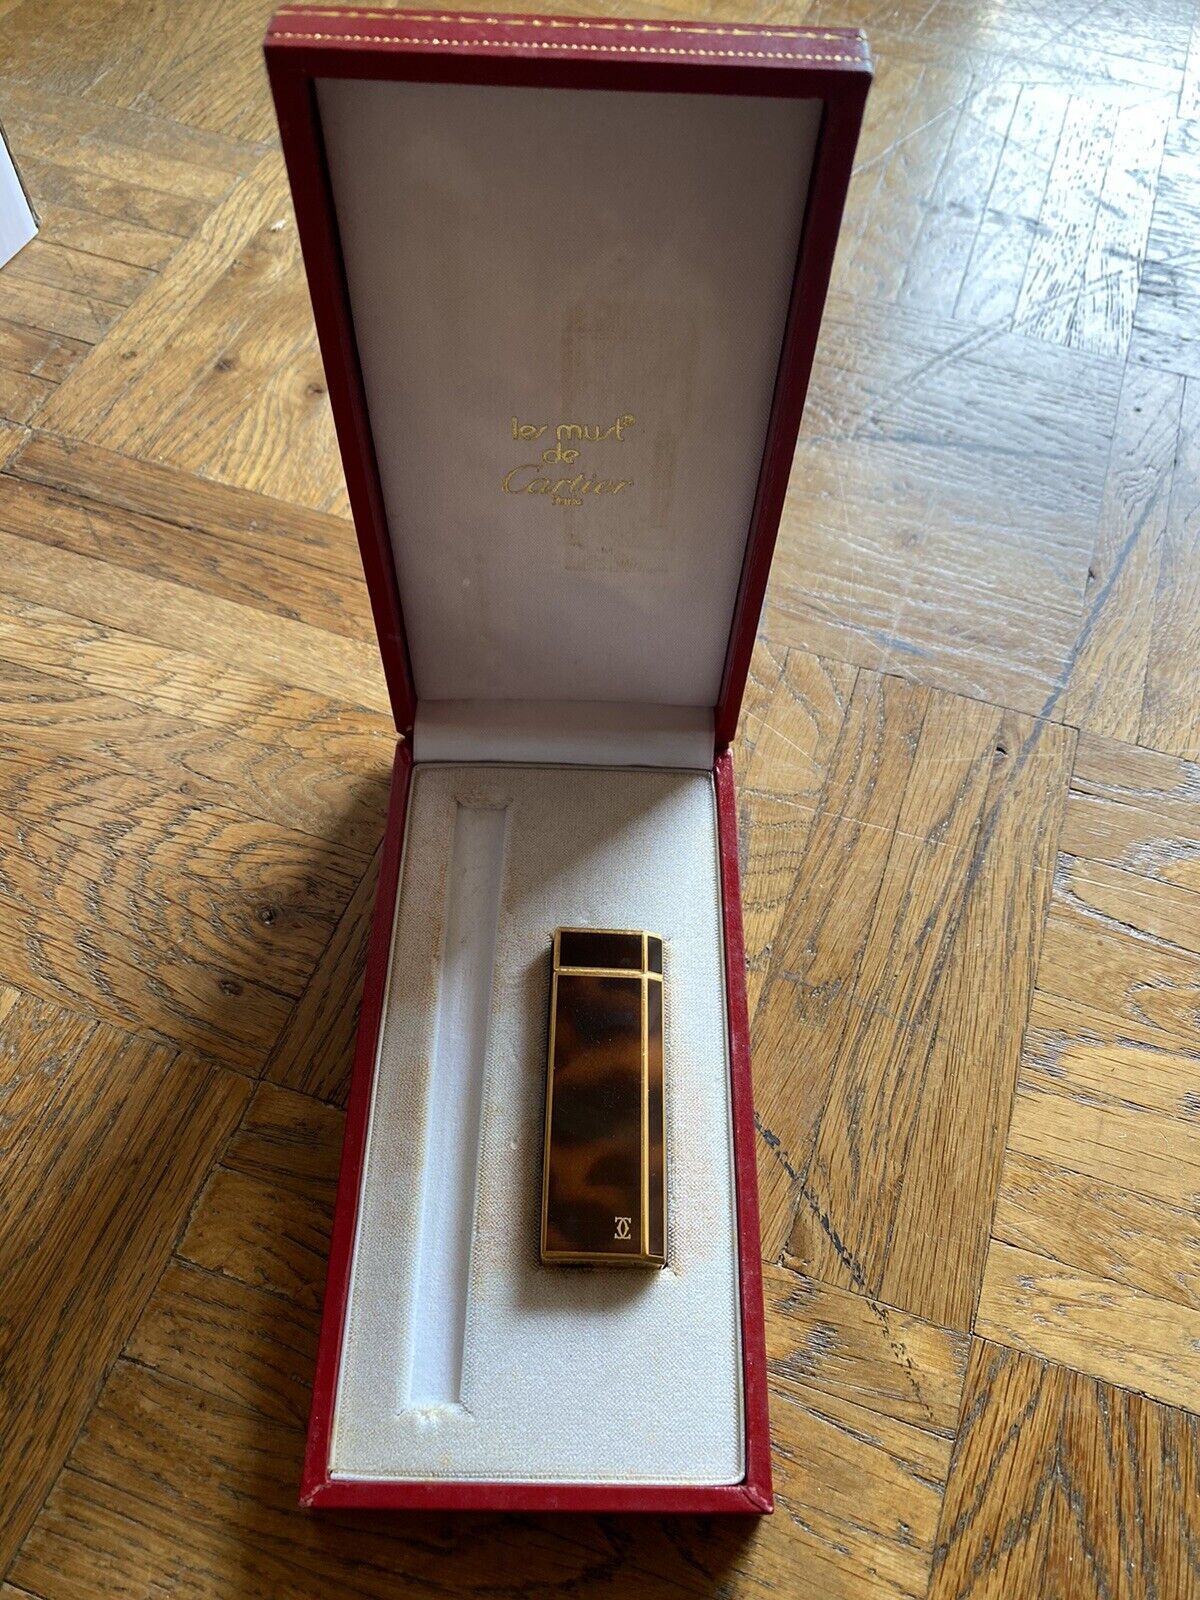 Les Must De Cartier Paris Ref: 1C90249 Vintage Gold Plated Lighter Excellent Condition